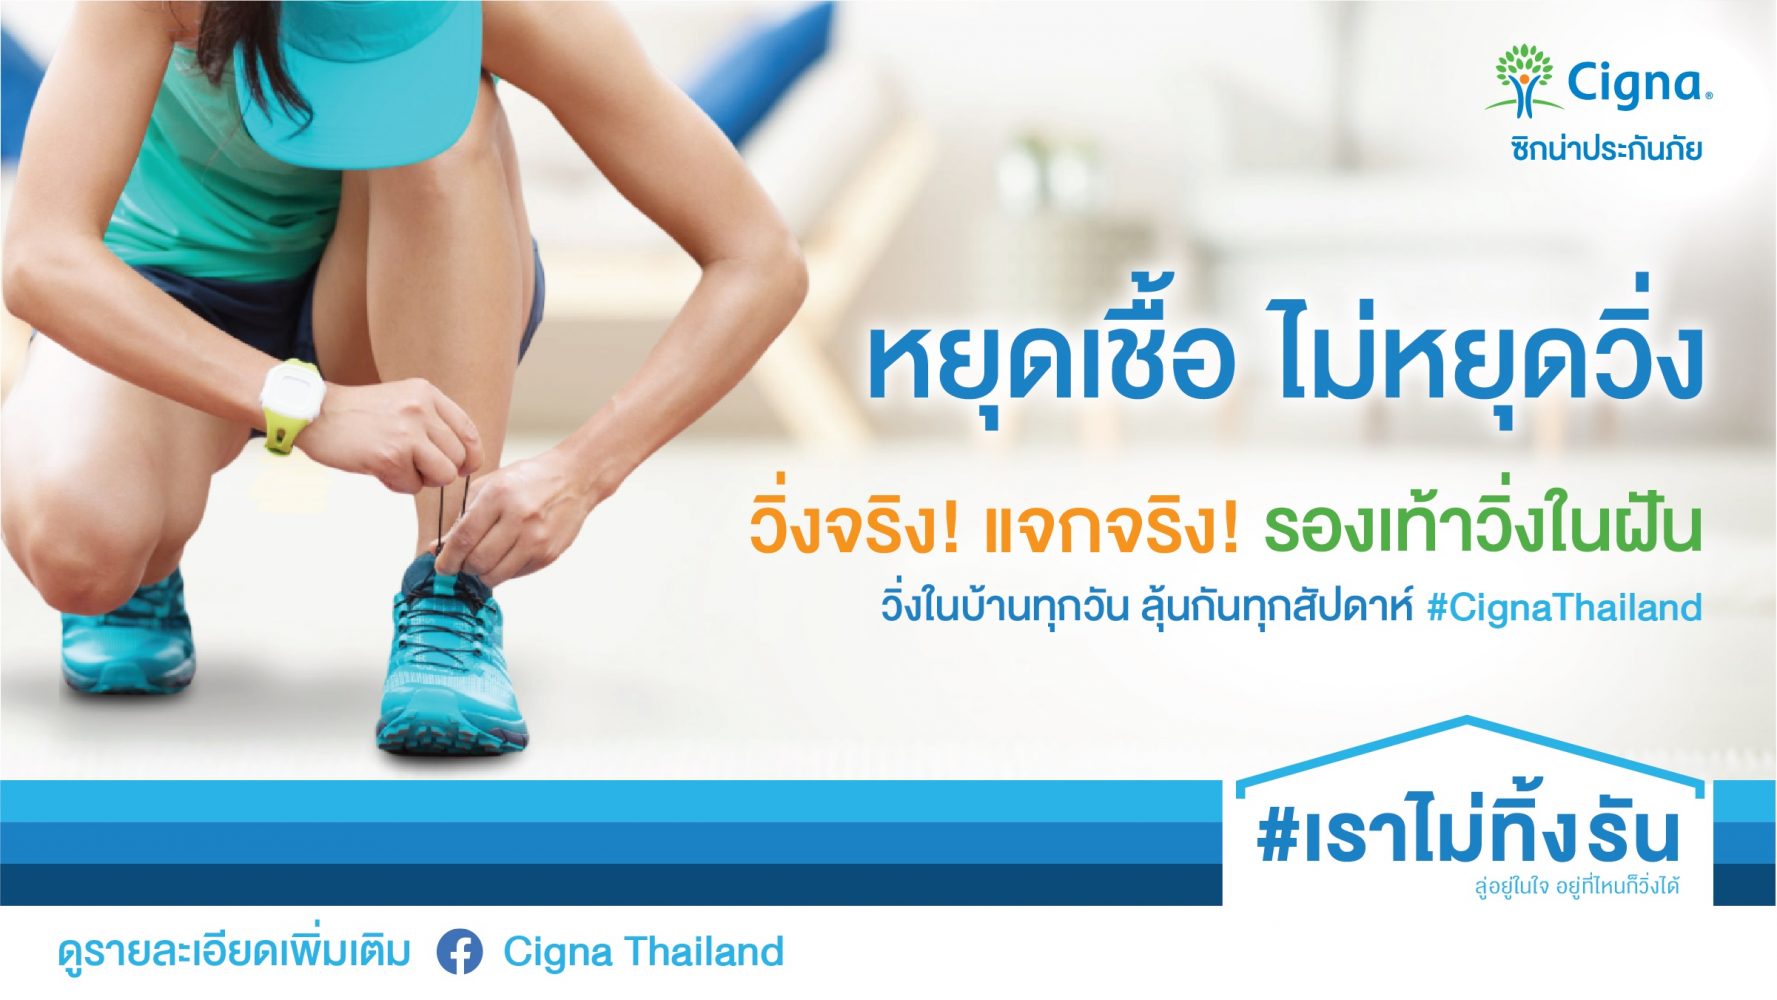 'ซิกน่า ส่งออนไลน์แคมเปญ #เราไม่ทิ้งรัน กระตุ้นให้คนไทยไม่หยุดออกกำลังกาย พร้อมลุ้นรับรองเท้าในฝัน